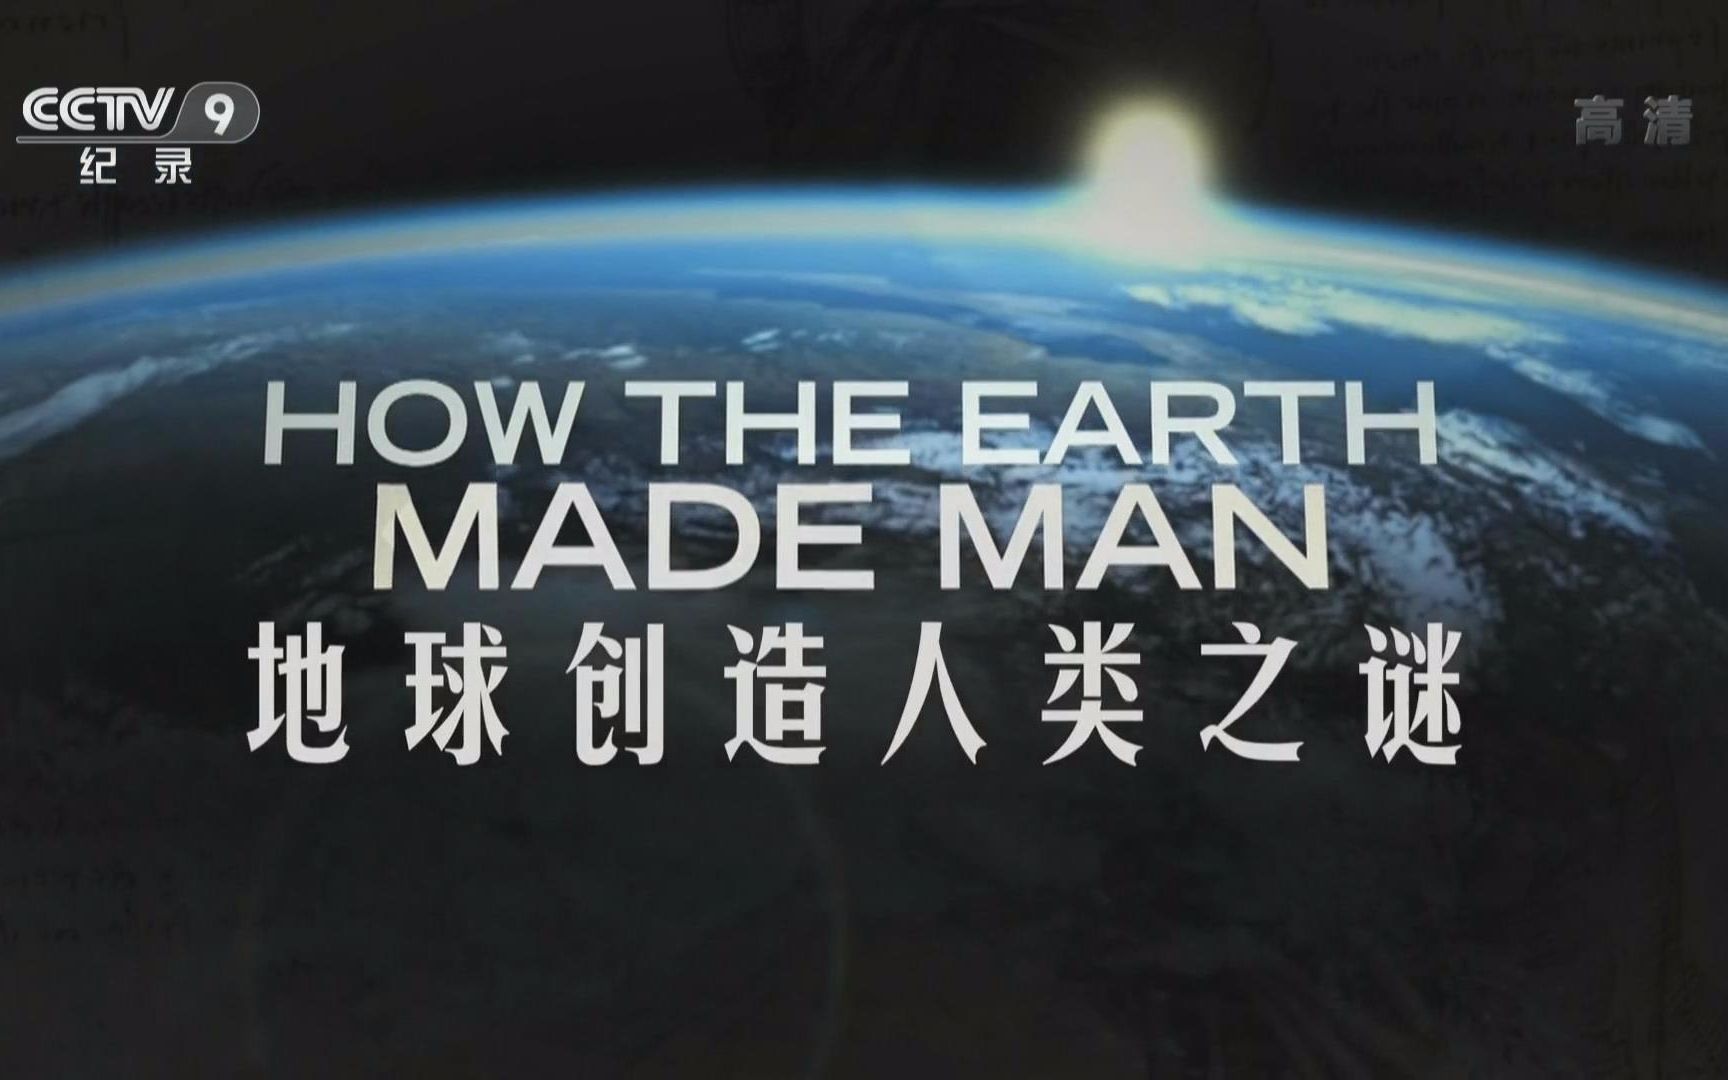 【央视 1080p高清】地球创造人类之谜【2集纪录片】